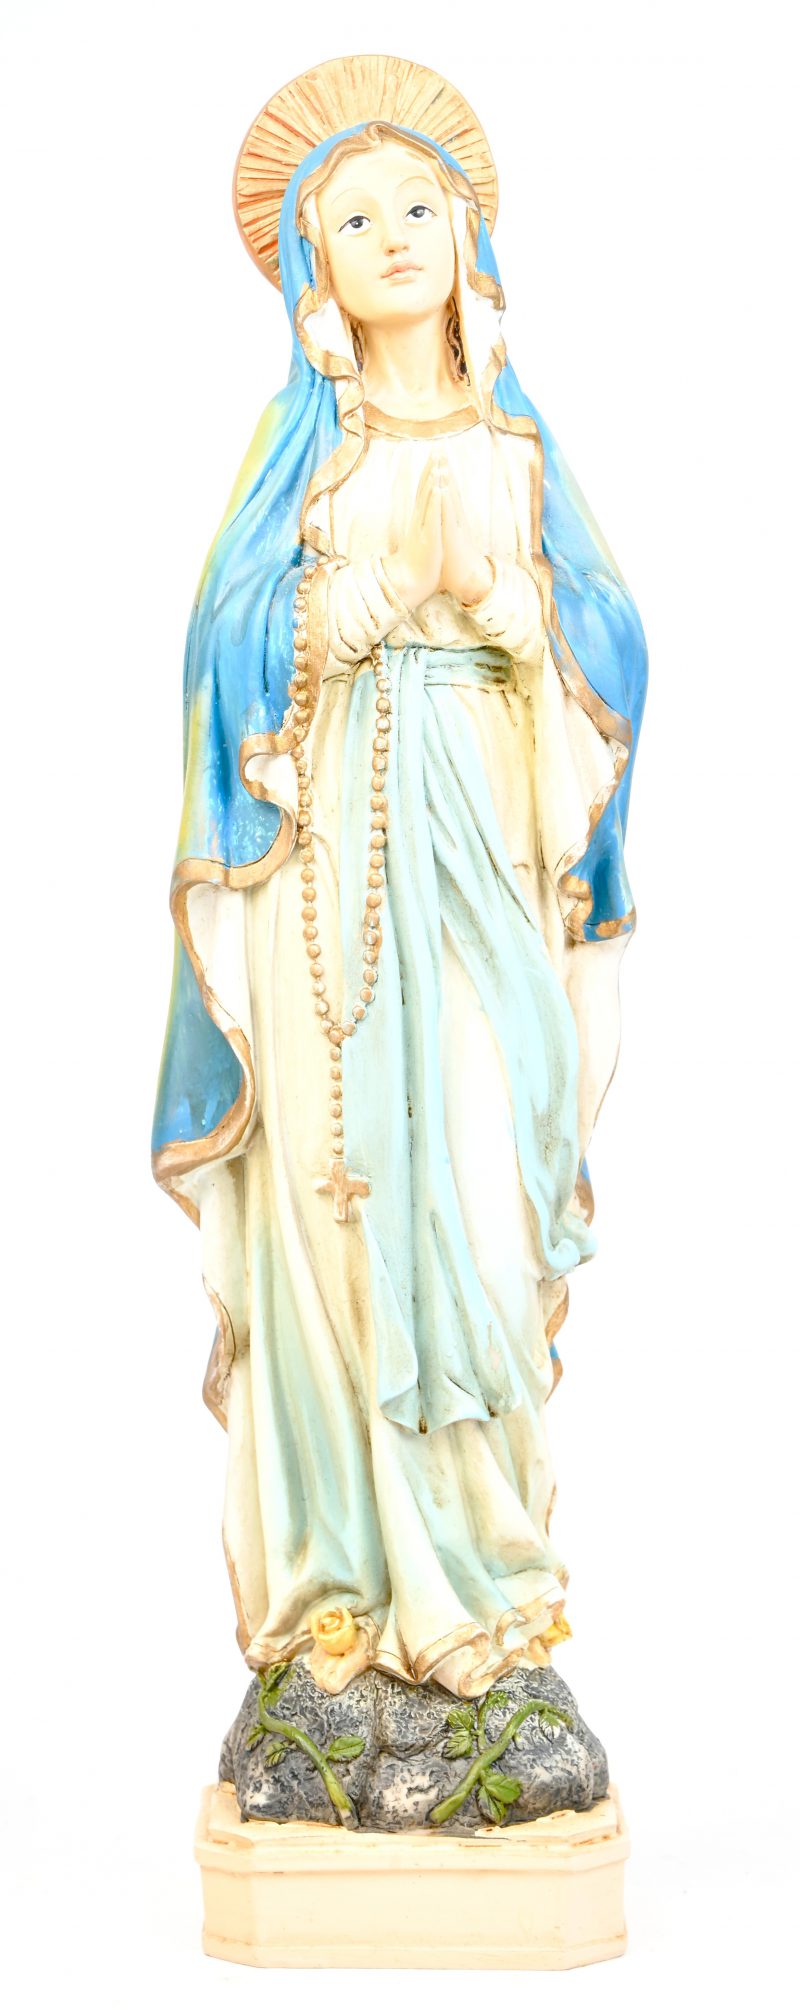 Een polychroom beeld van de heilige moeder in kunststof.